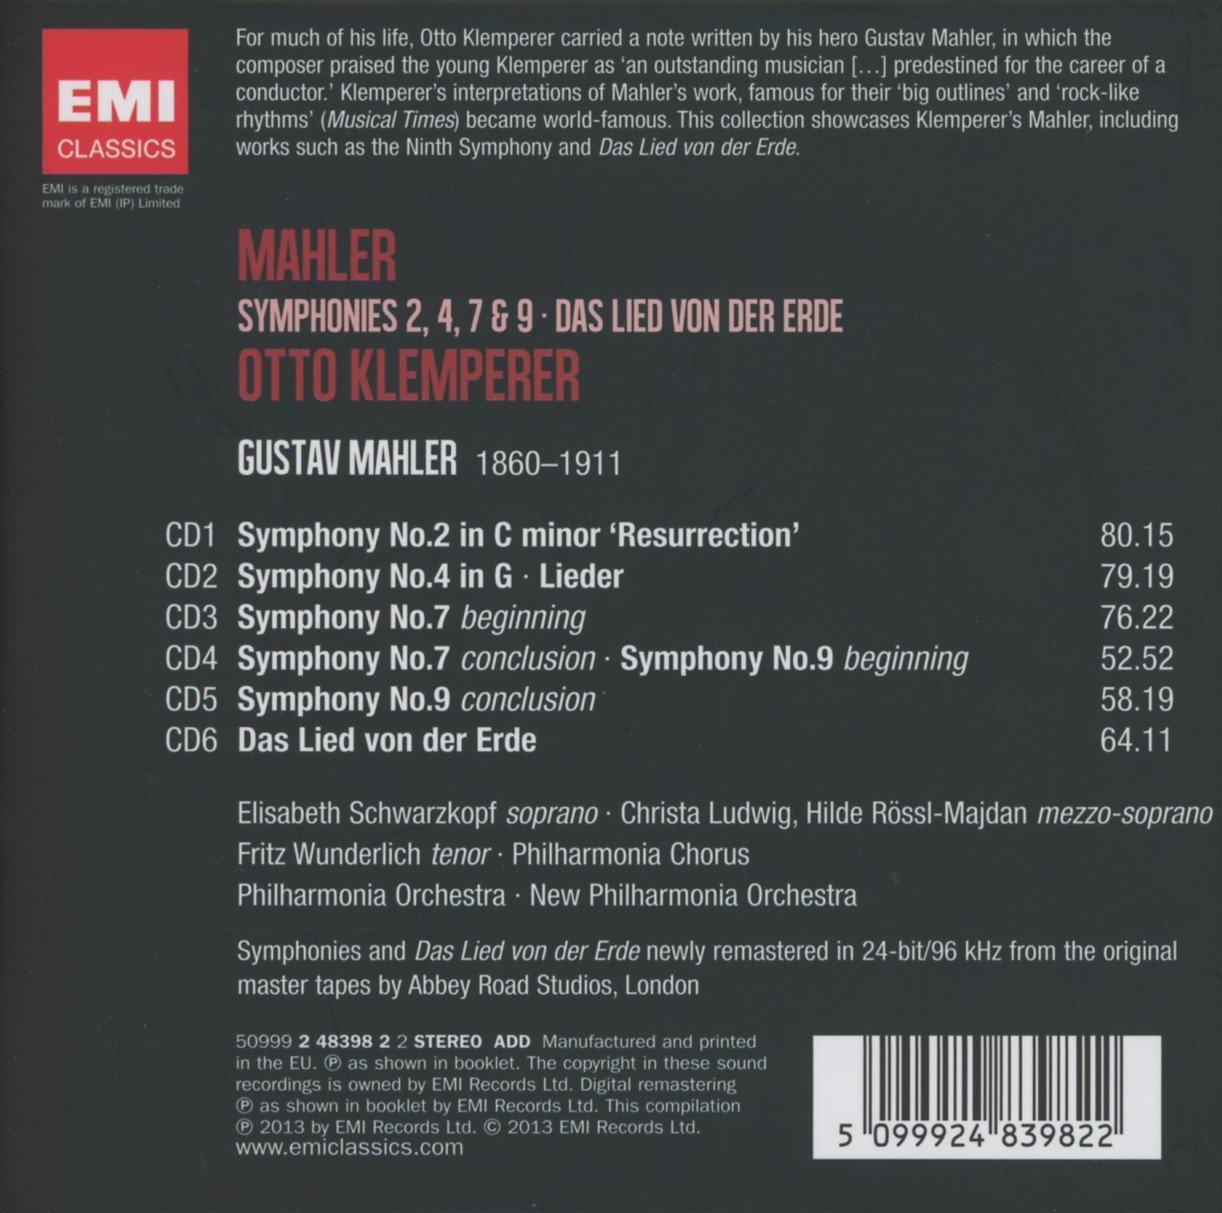 Mahler box-set, Symphonies 2, 4, 7 & 9 / Das Lied von der Erde